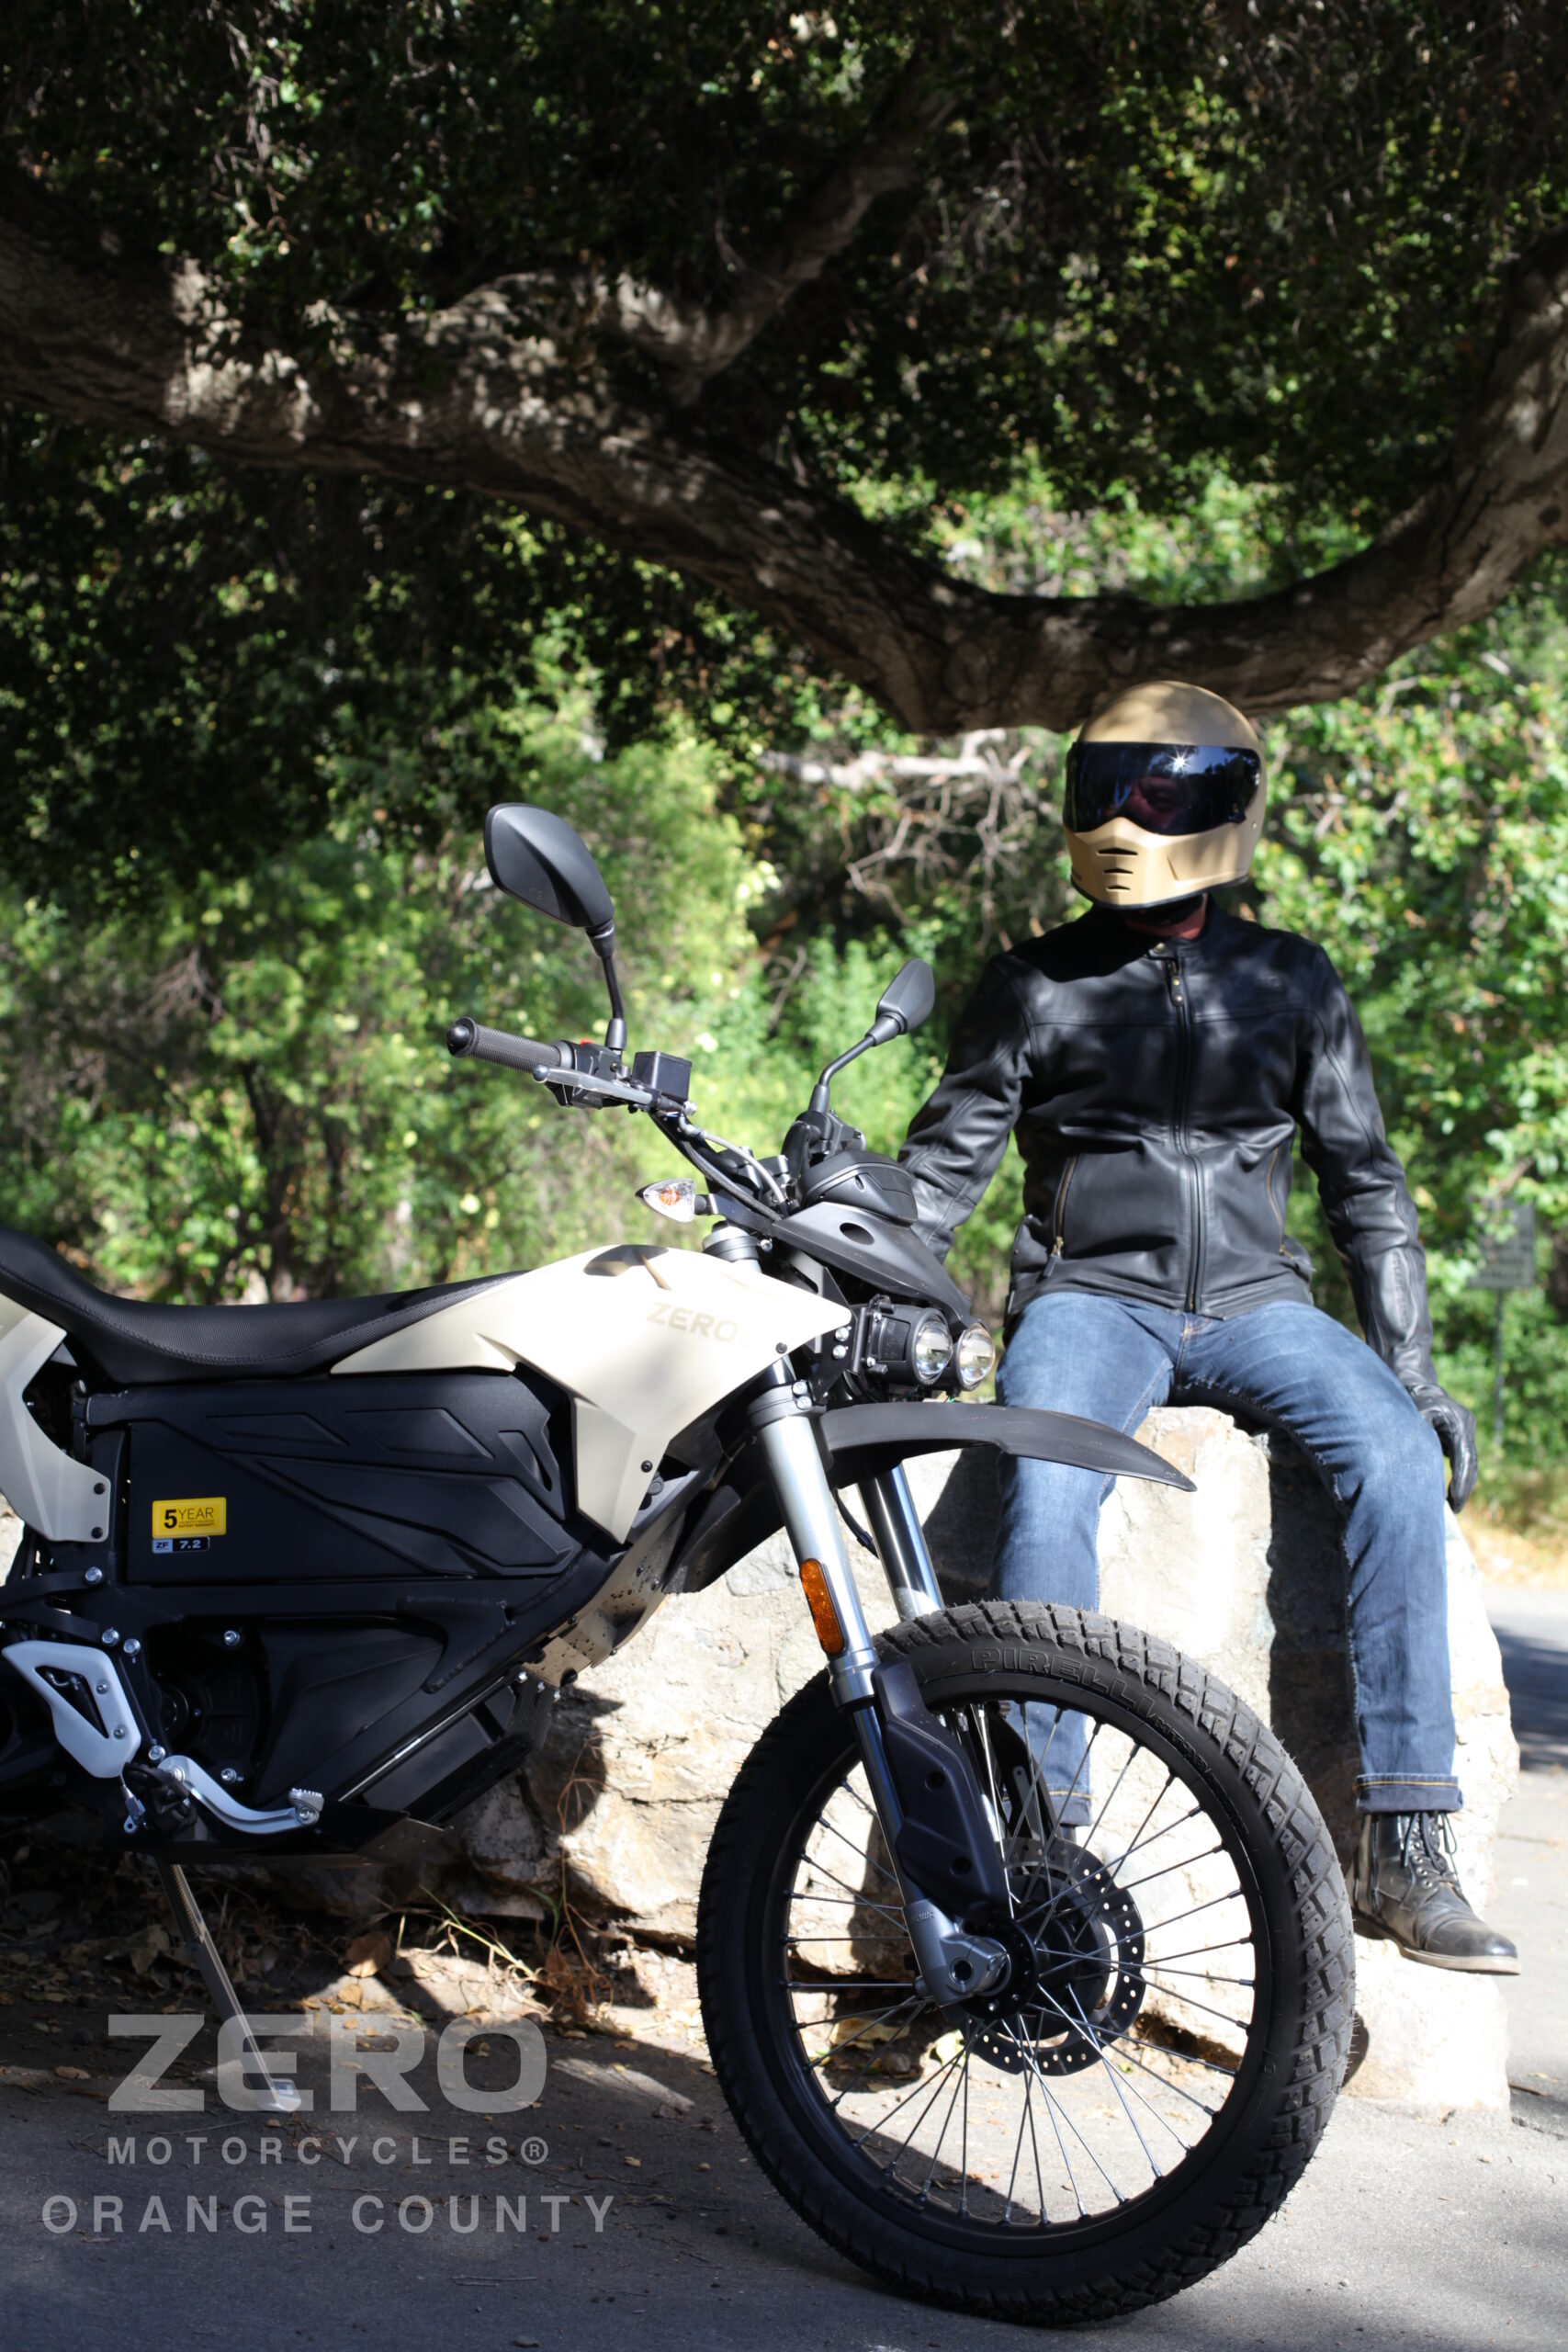 Demo Rides - Zero Motorcycles of Orange County